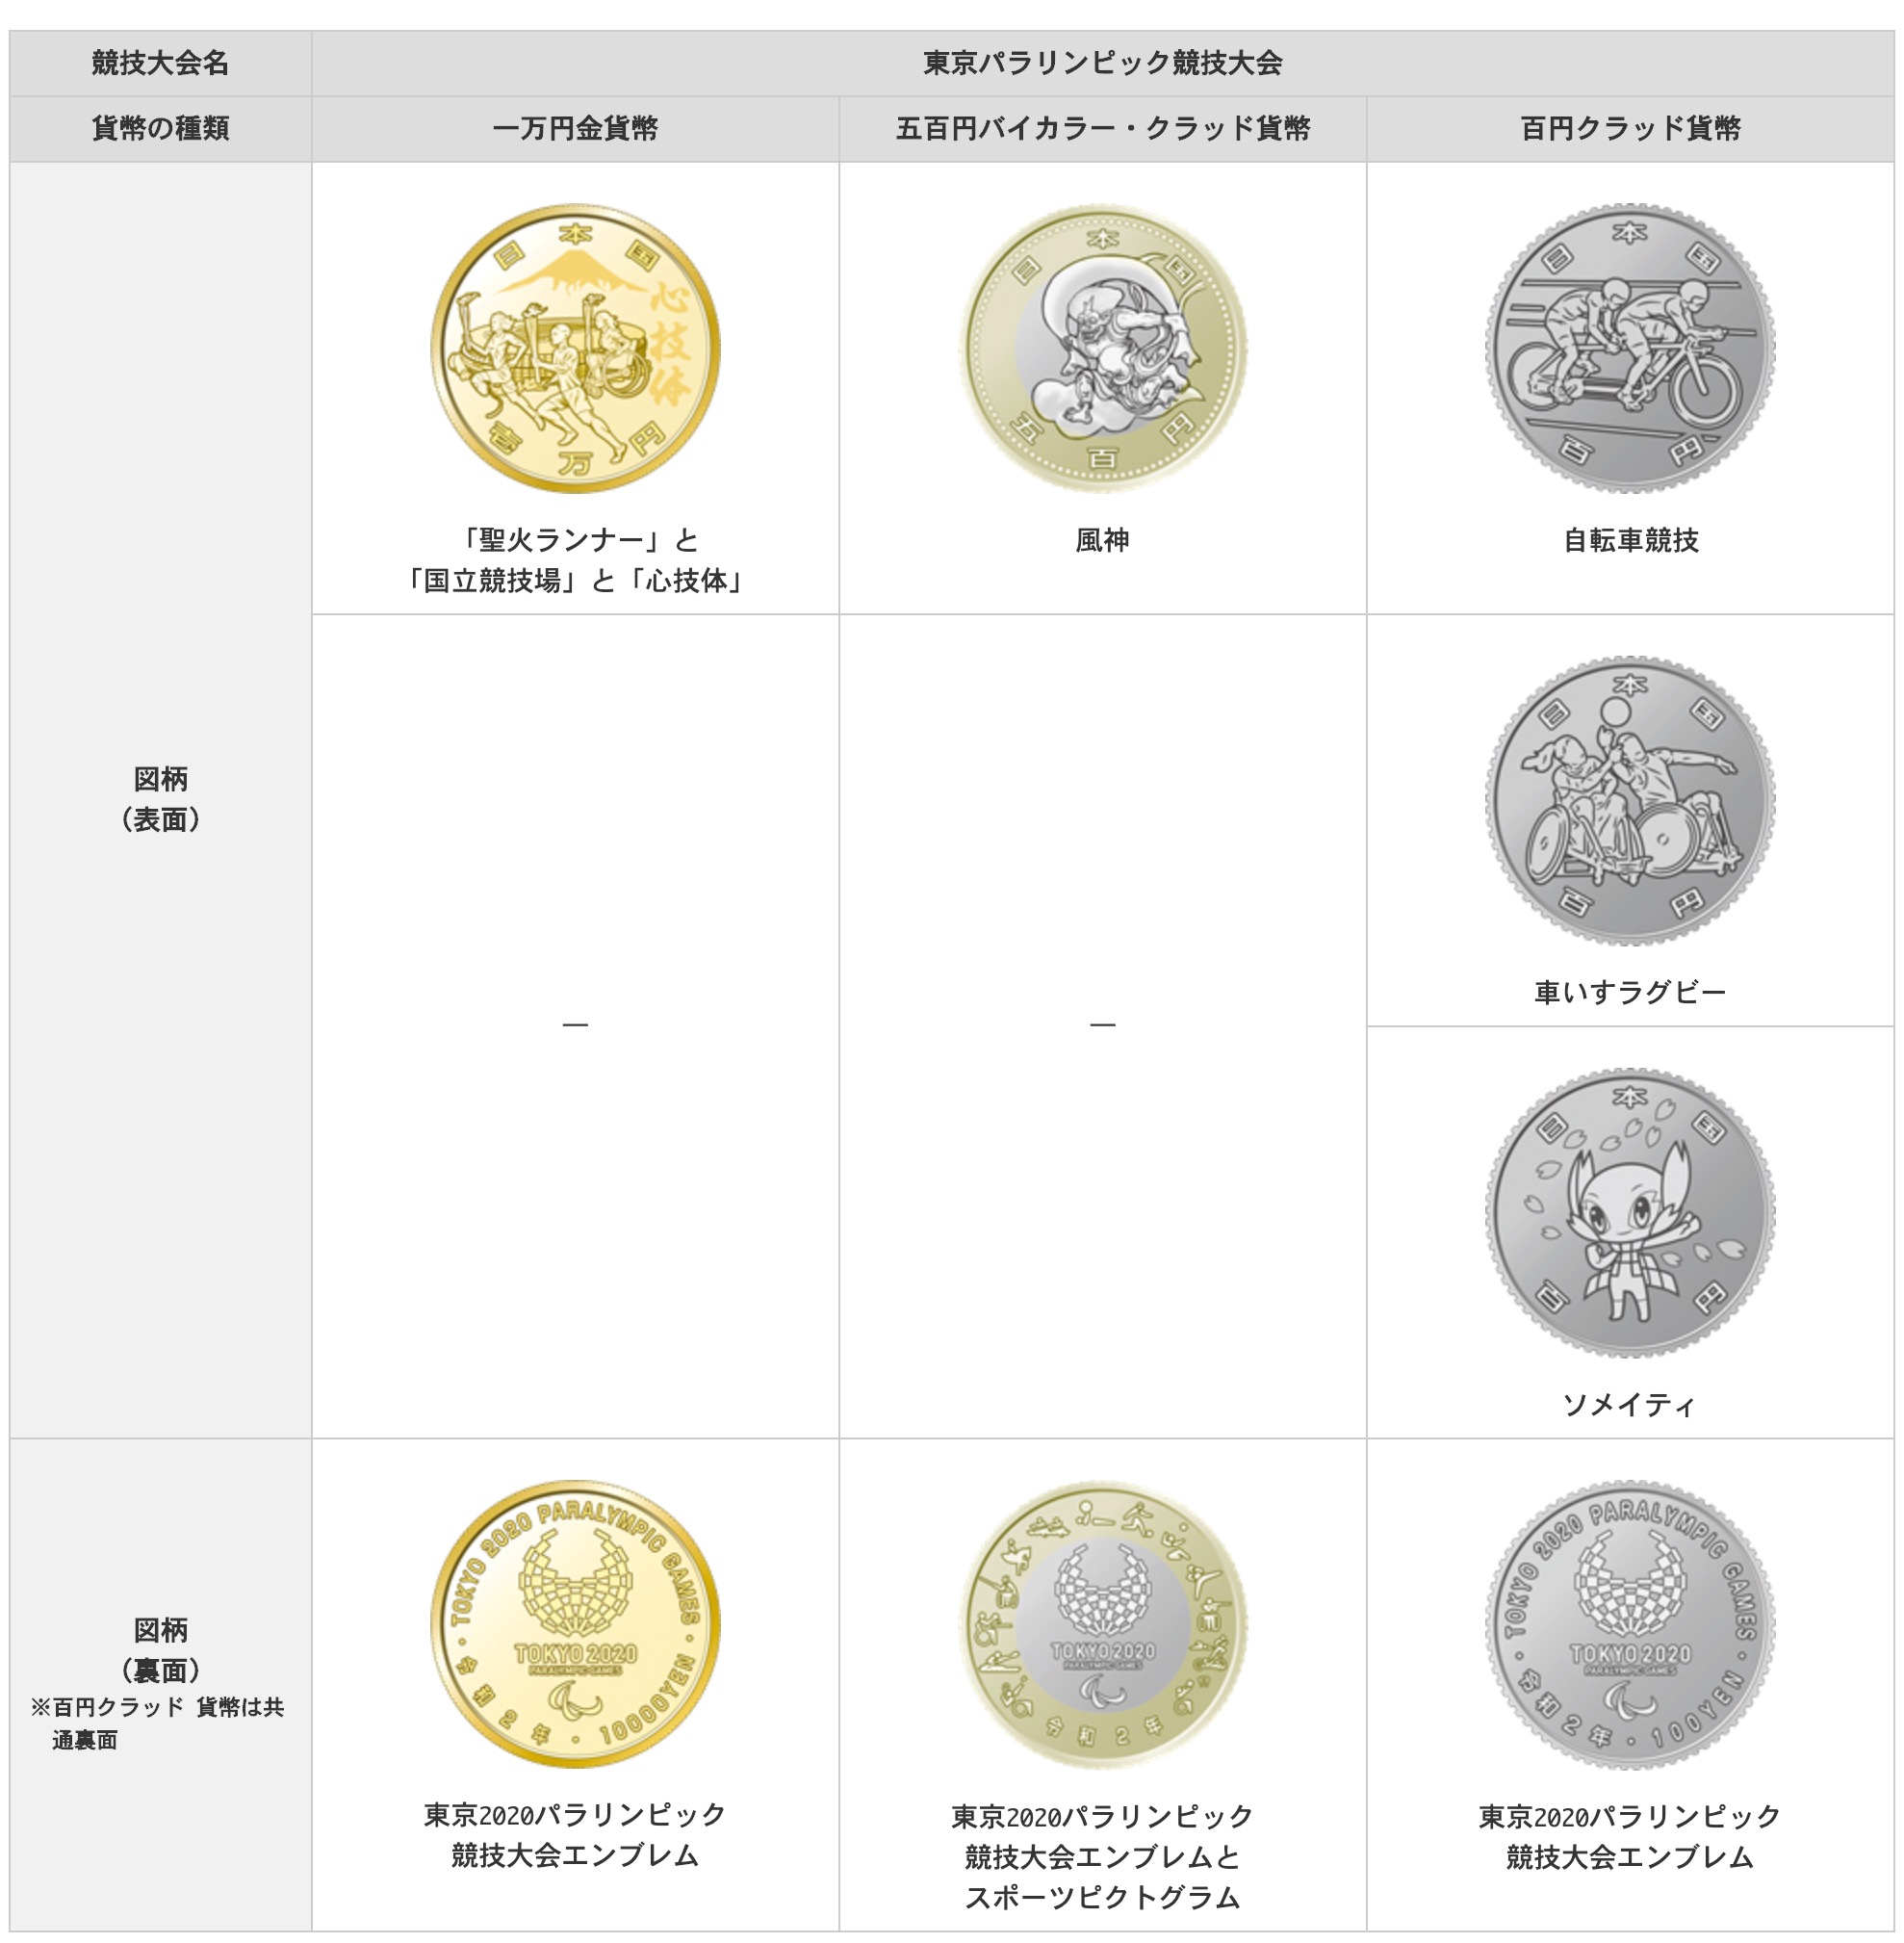 PCGS鑑定済】2020東京オリンピックパラリンピック 記念銀貨セット 